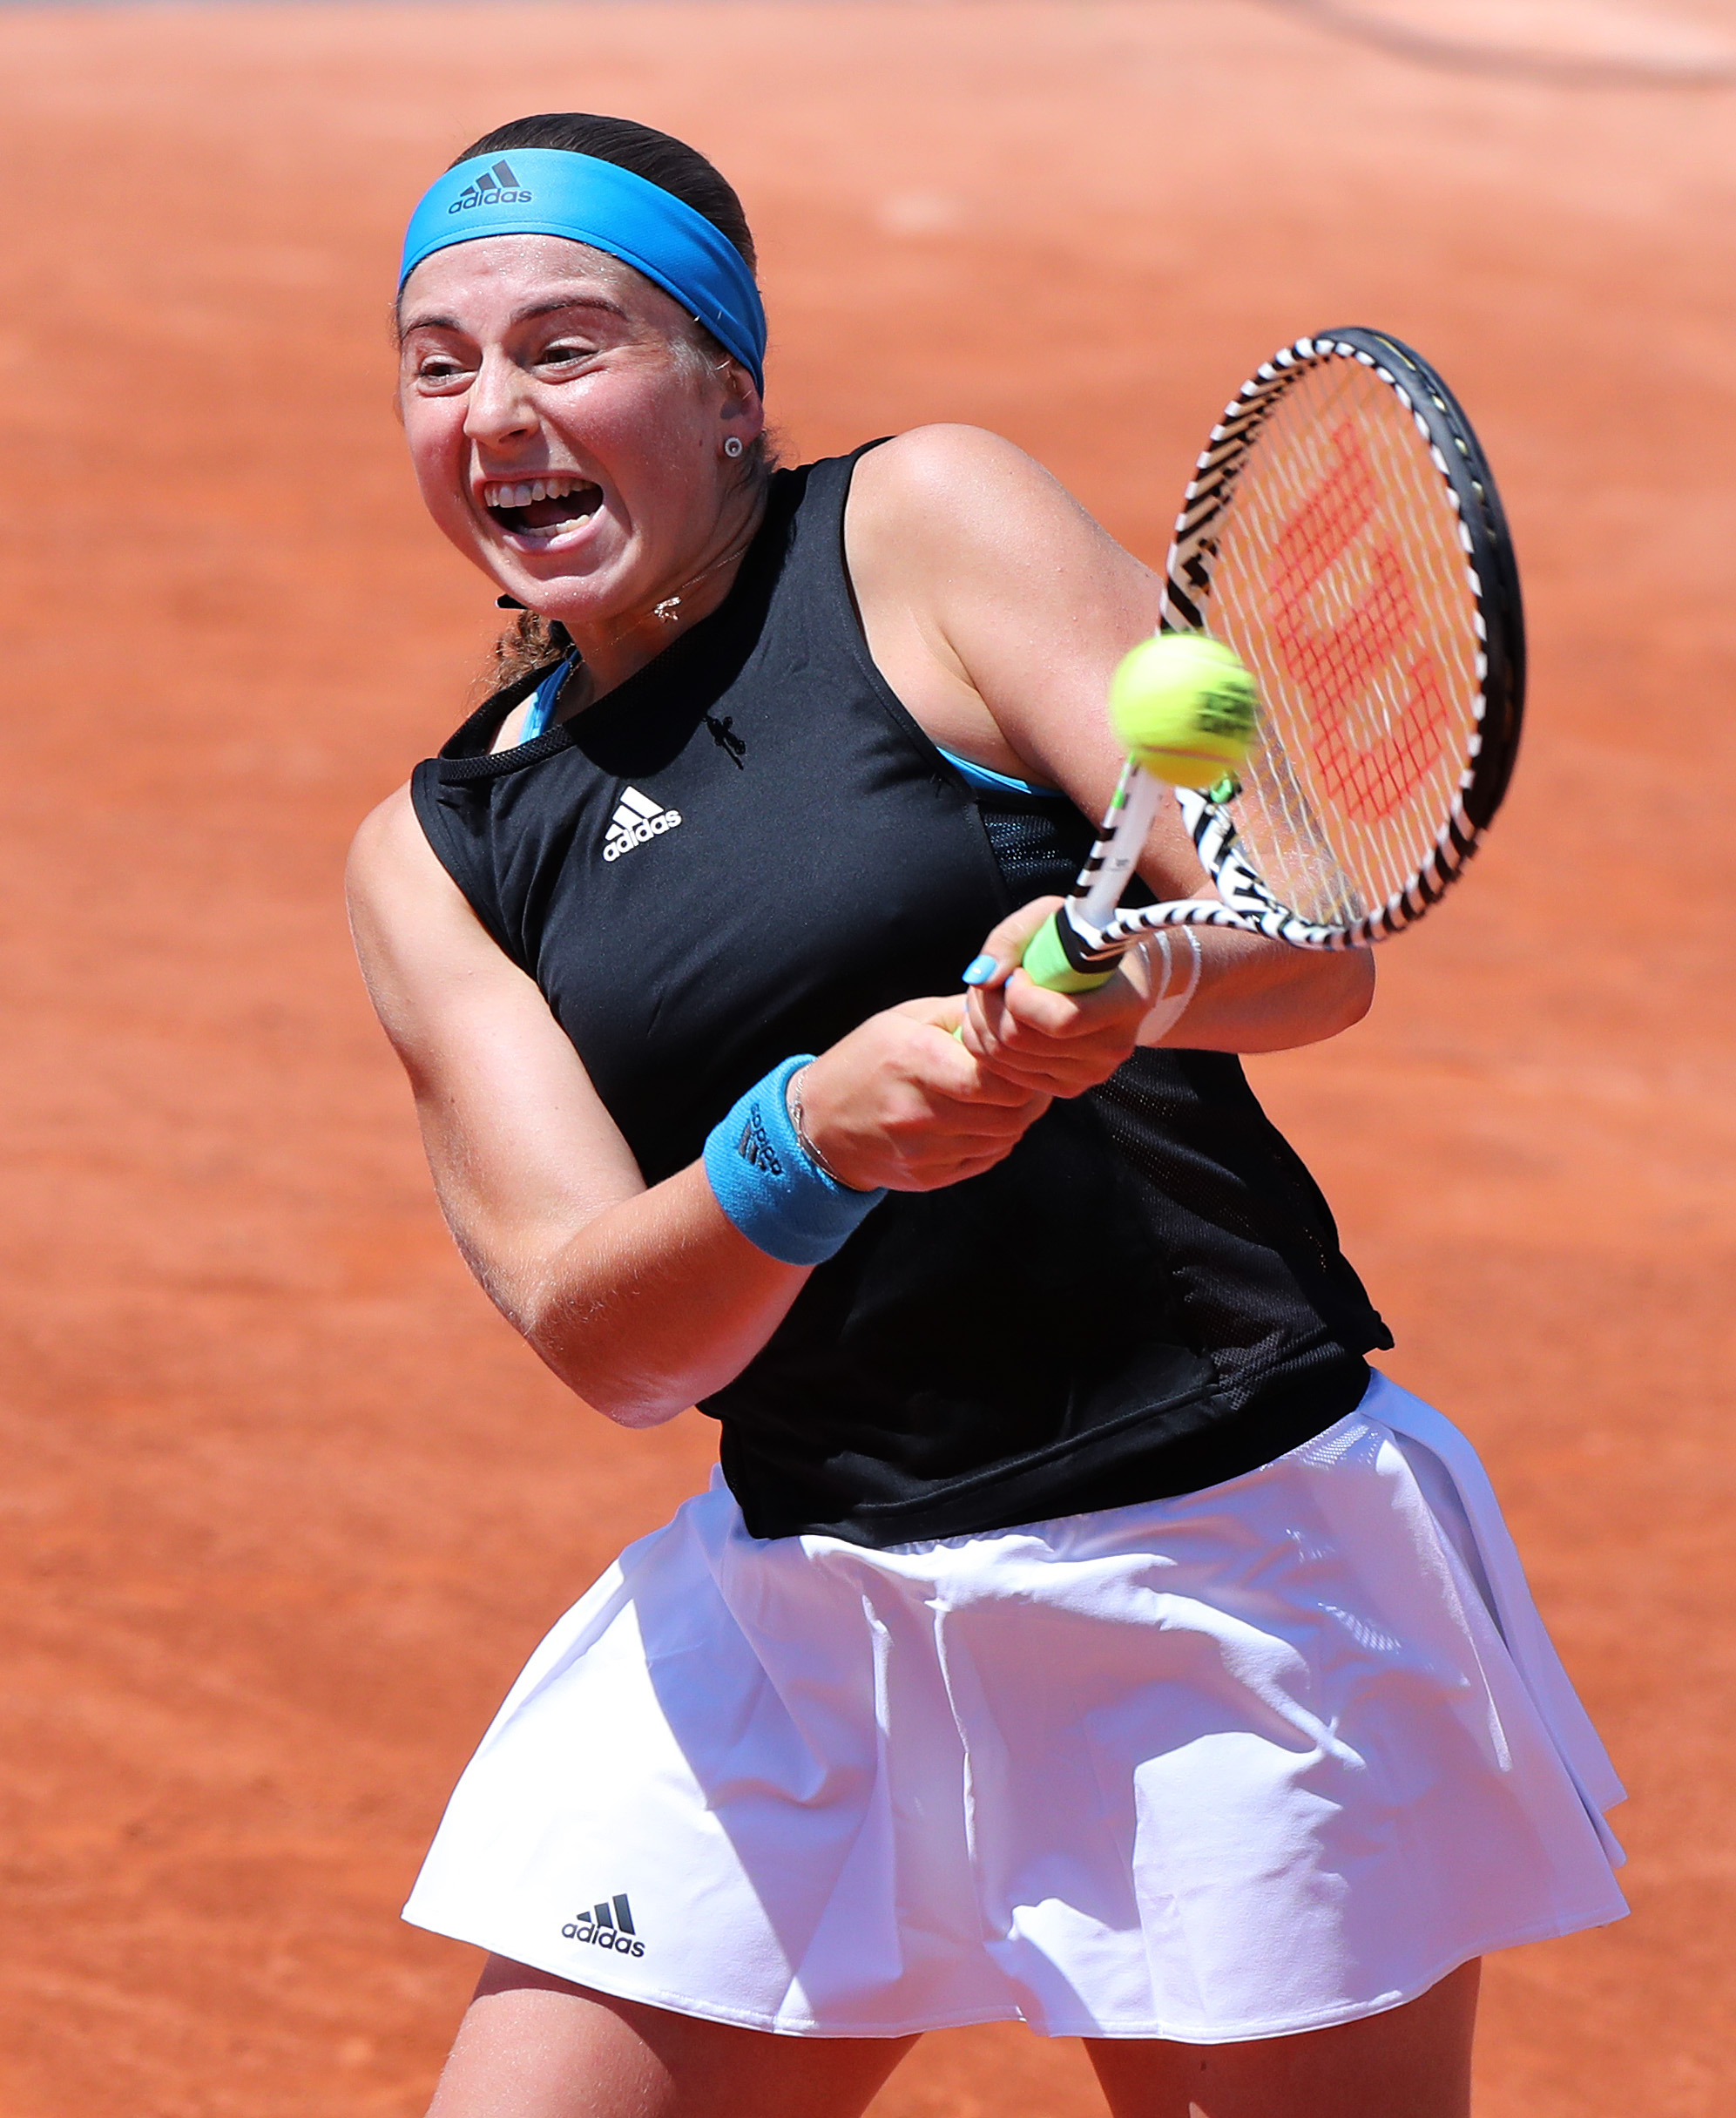 法国网球公开赛女单首轮比赛中,白俄罗斯选手阿扎伦卡以2比0战胜